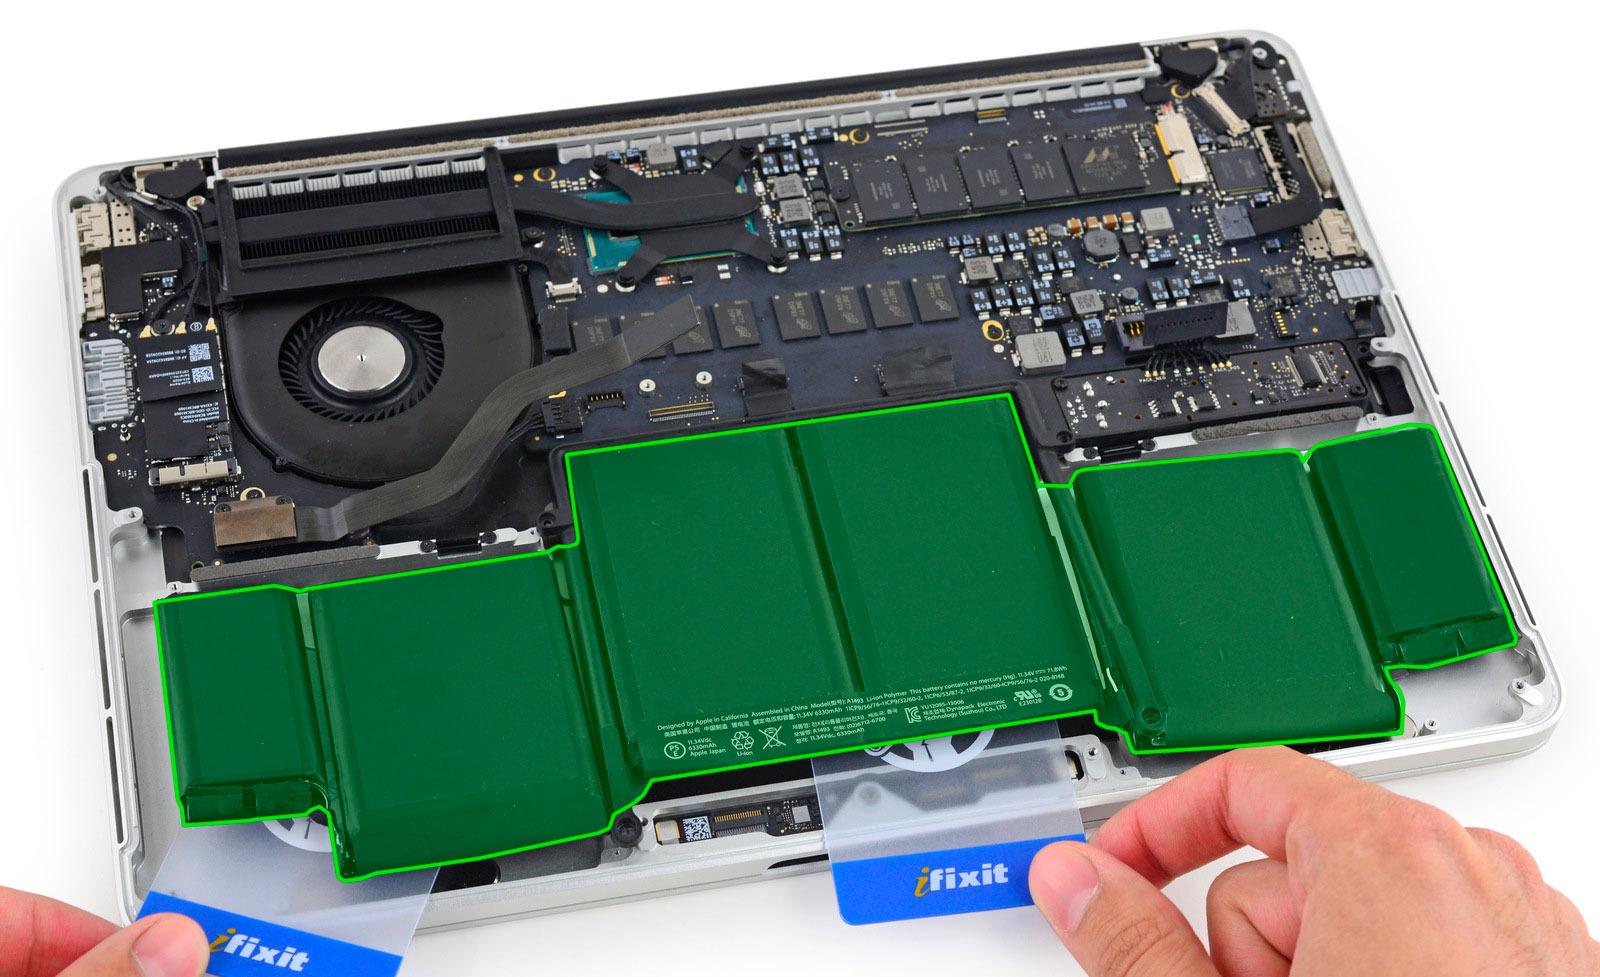 Nesten halvparten av innmaten i bærbare datamaskiner er batteriet. Her er en Macbook Pro Retina avbildet, hvor batteriene er merket i grønt. Foto: iFixit